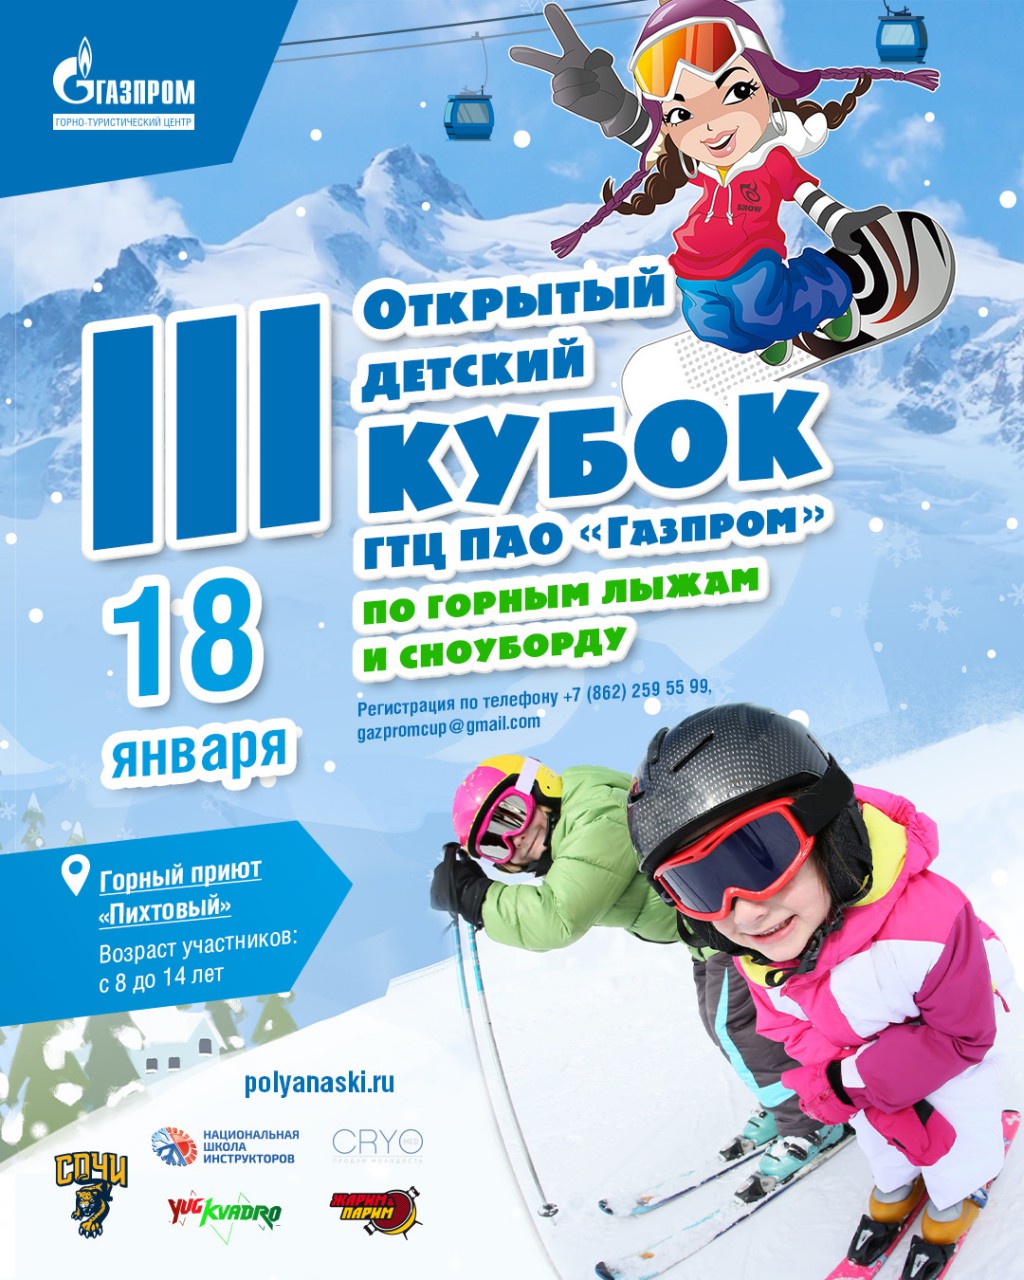 Борьба за кубок среди юных райдеров. На курорте Газпром пройдут детские соревнования по горным лыжам и сноуборду